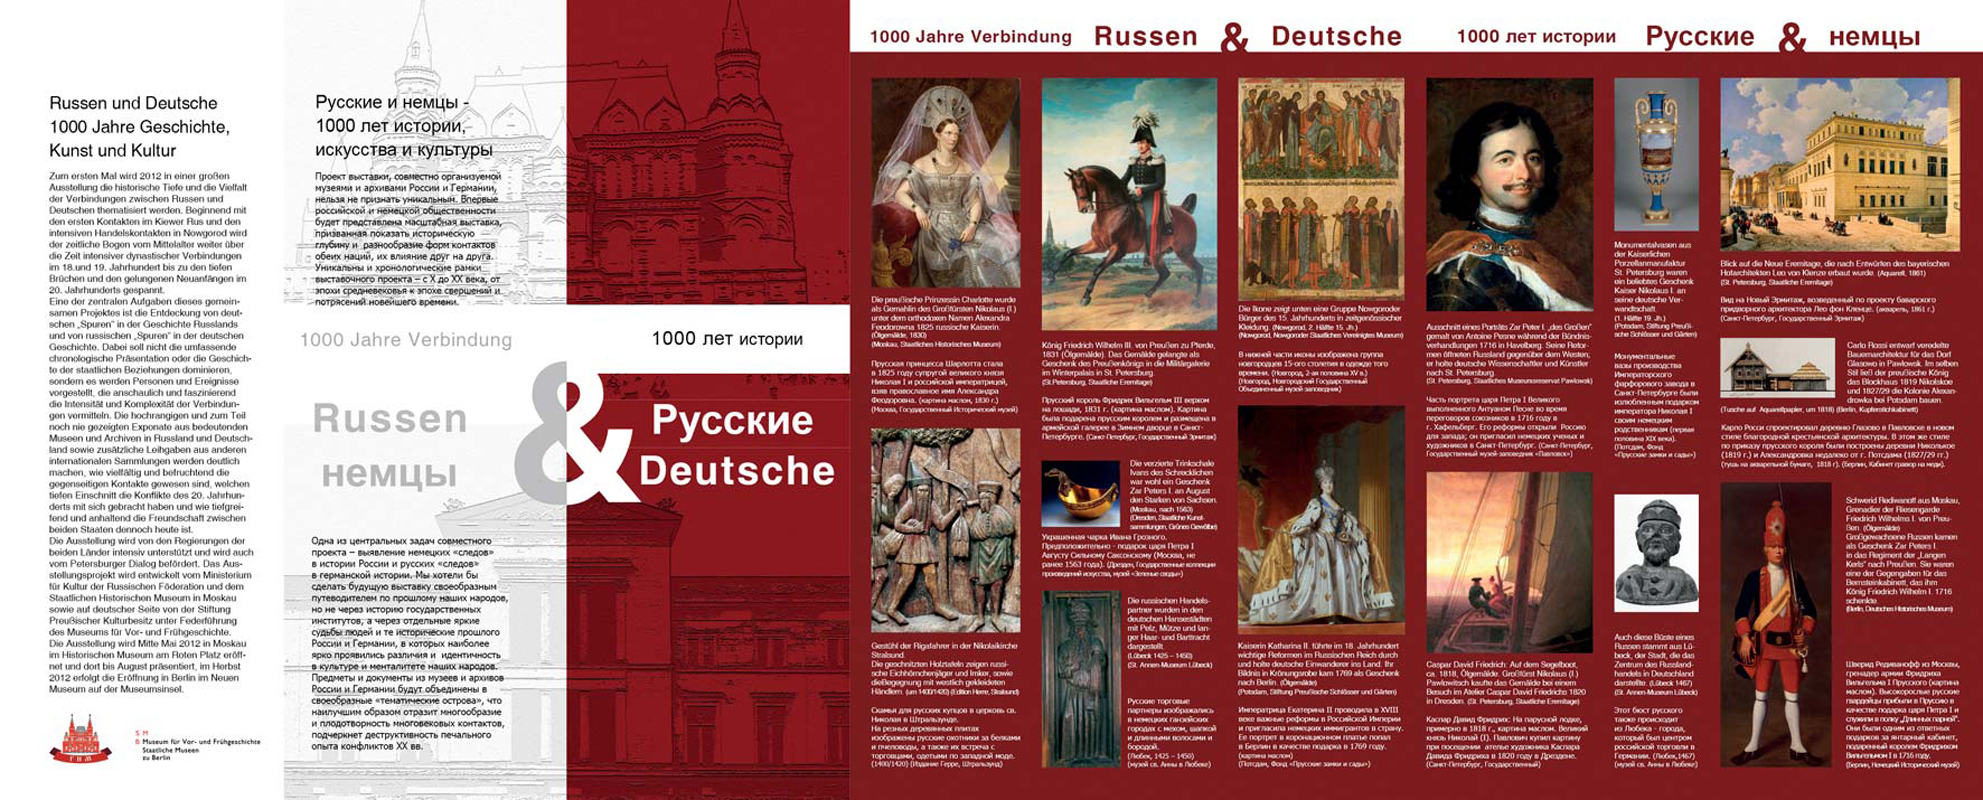 Faltblatt zur Vorbereitung der Austellung „Russen & Deutsche", Neues Museum Berlin, 2012/13. Layout: Silvia Nettekoven